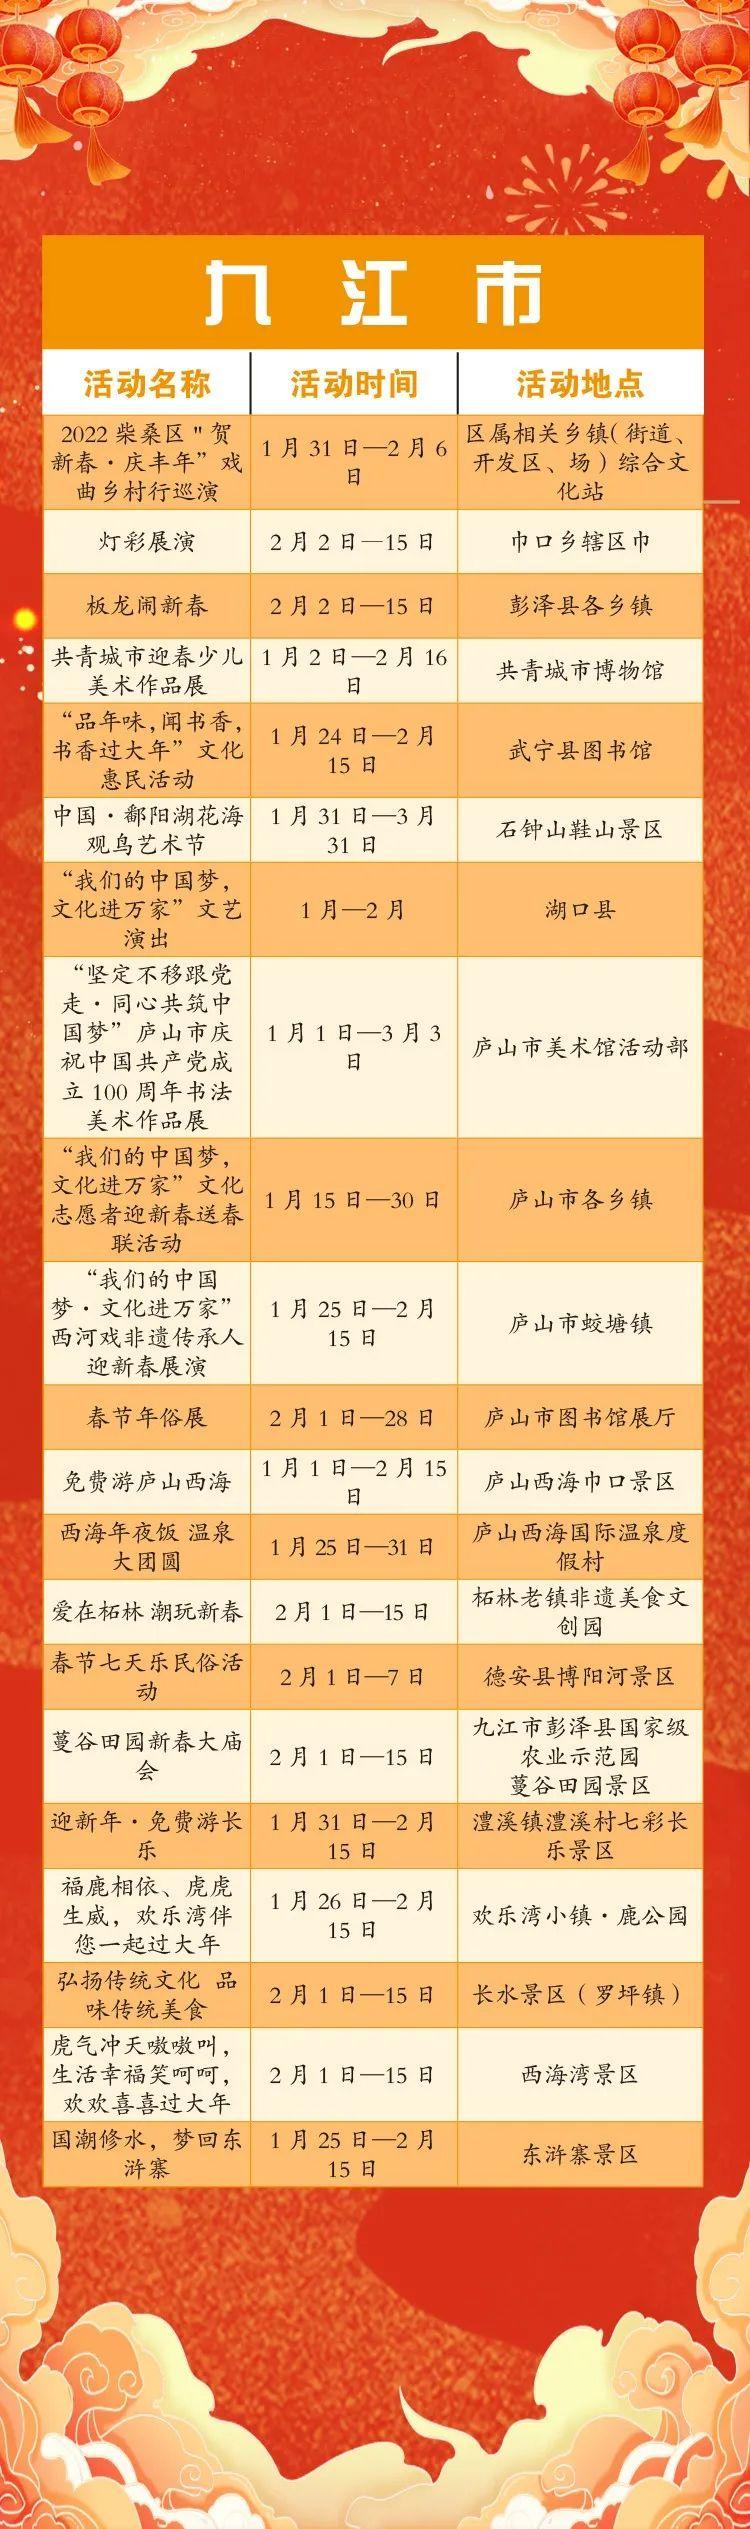 2022江西春节假期景区免门票活动详解